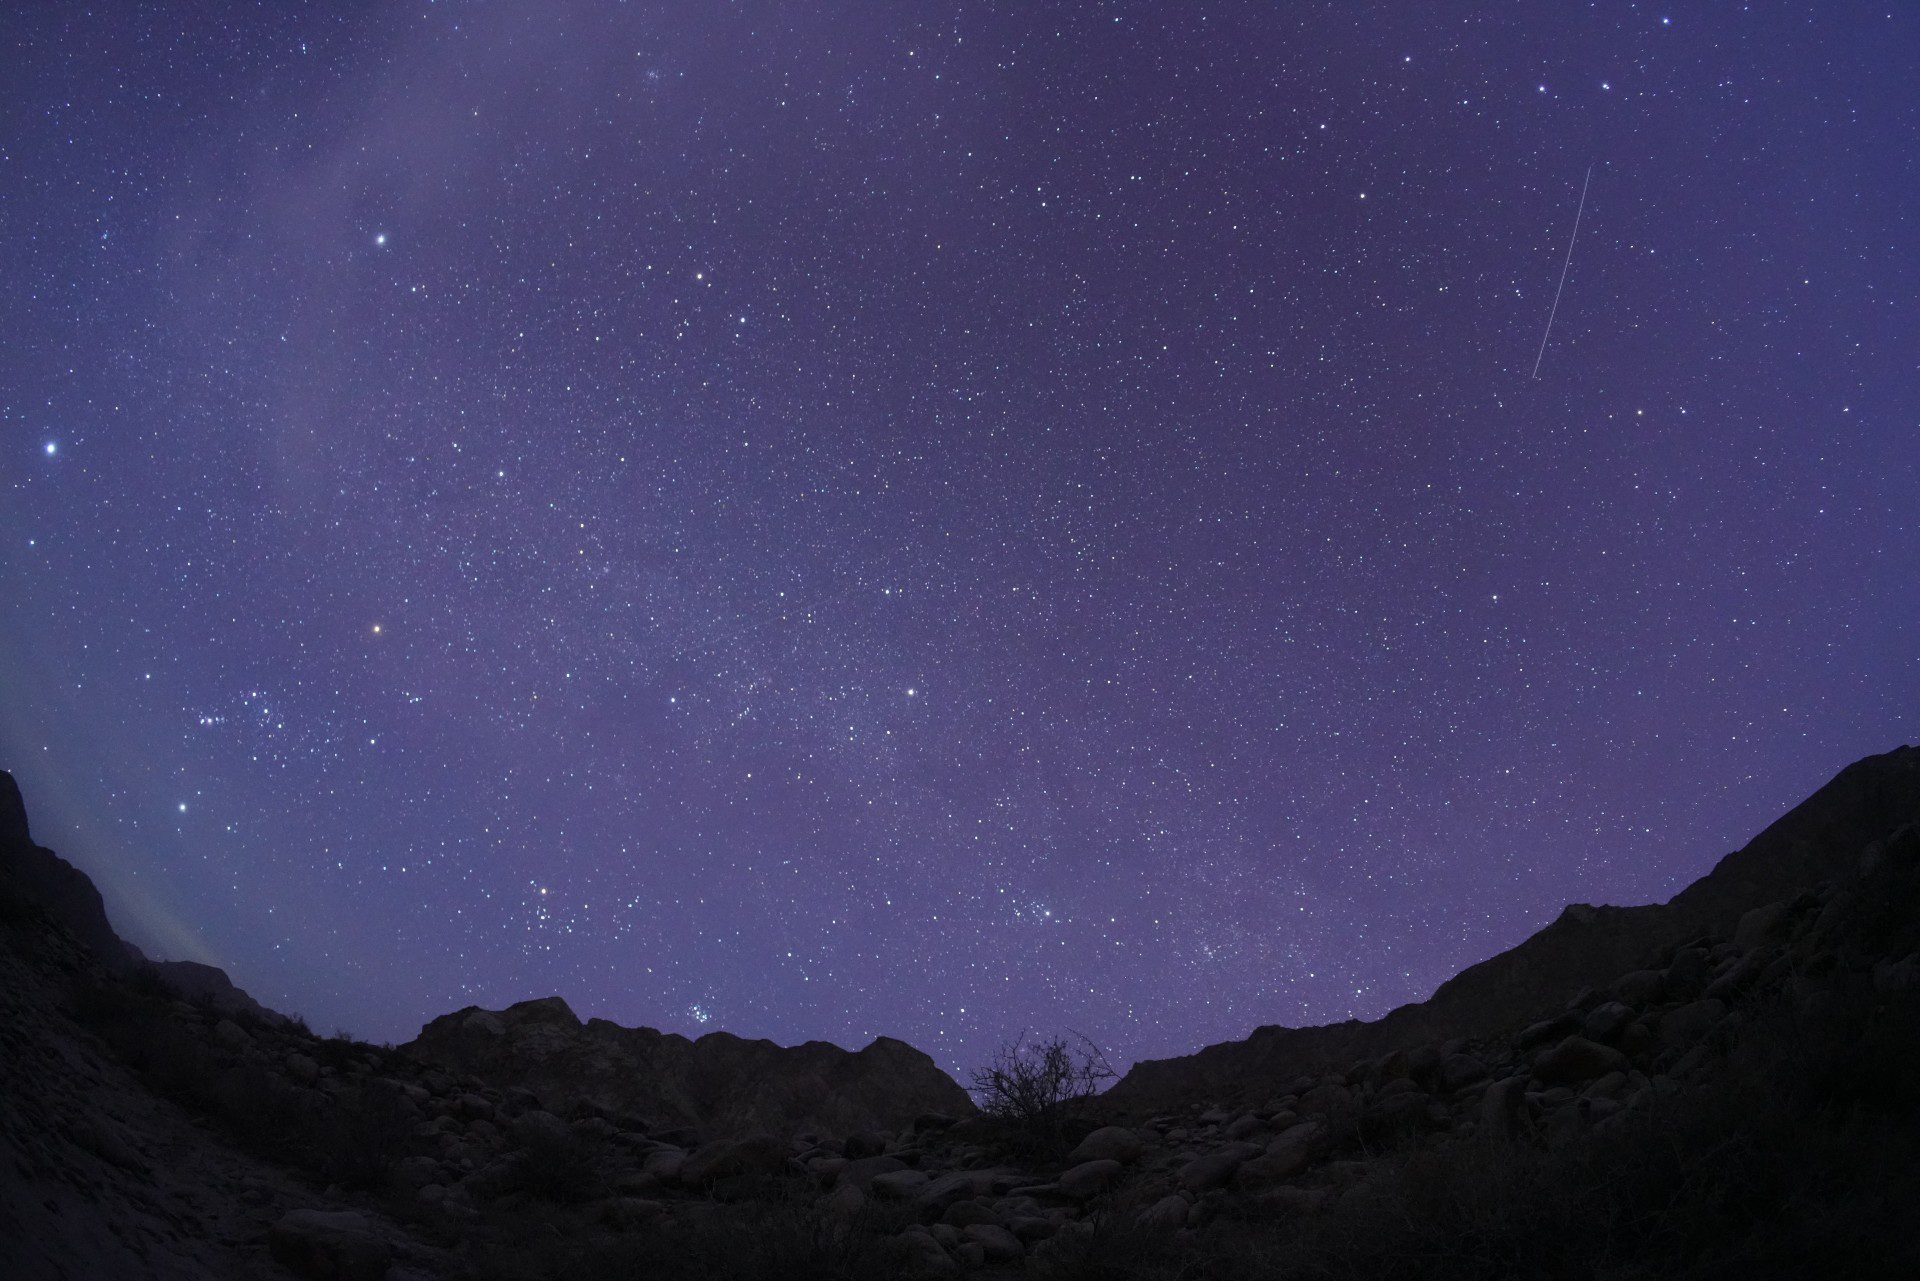 Sebuah meteor melesat menembus langit berbintang di atas pegunungan